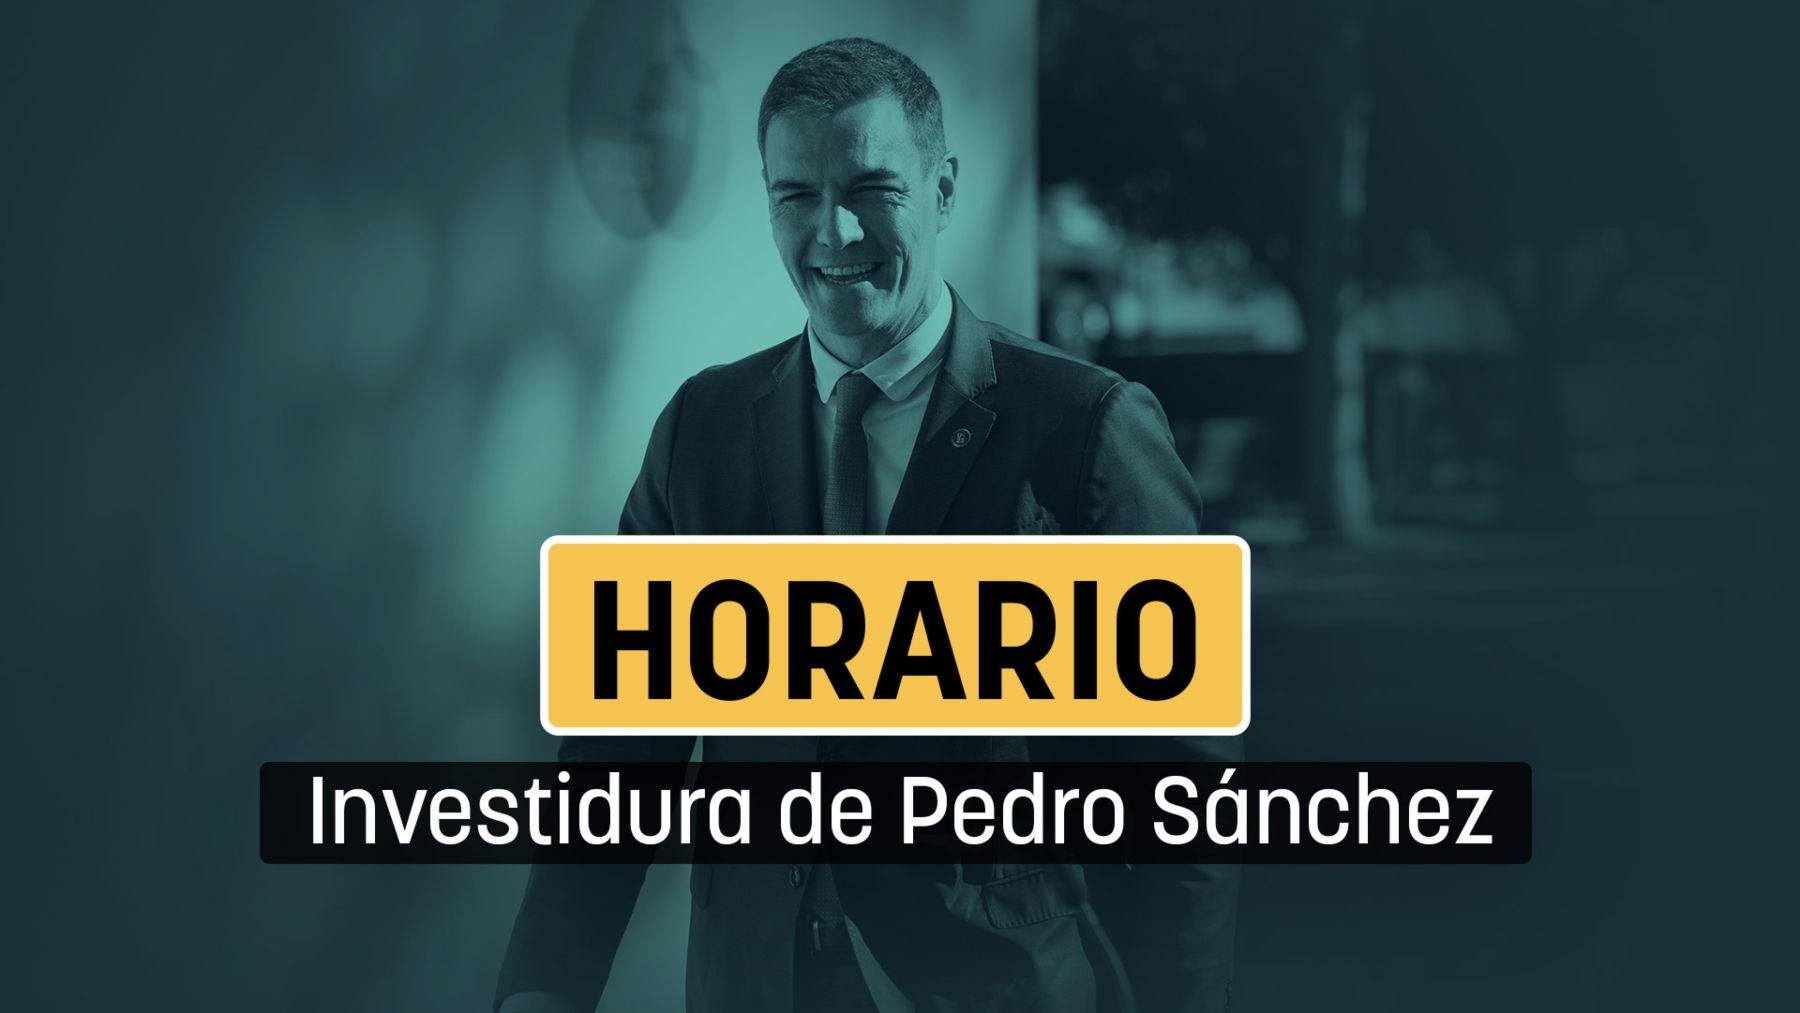 Horario de investidura de Pedro Sánchez.